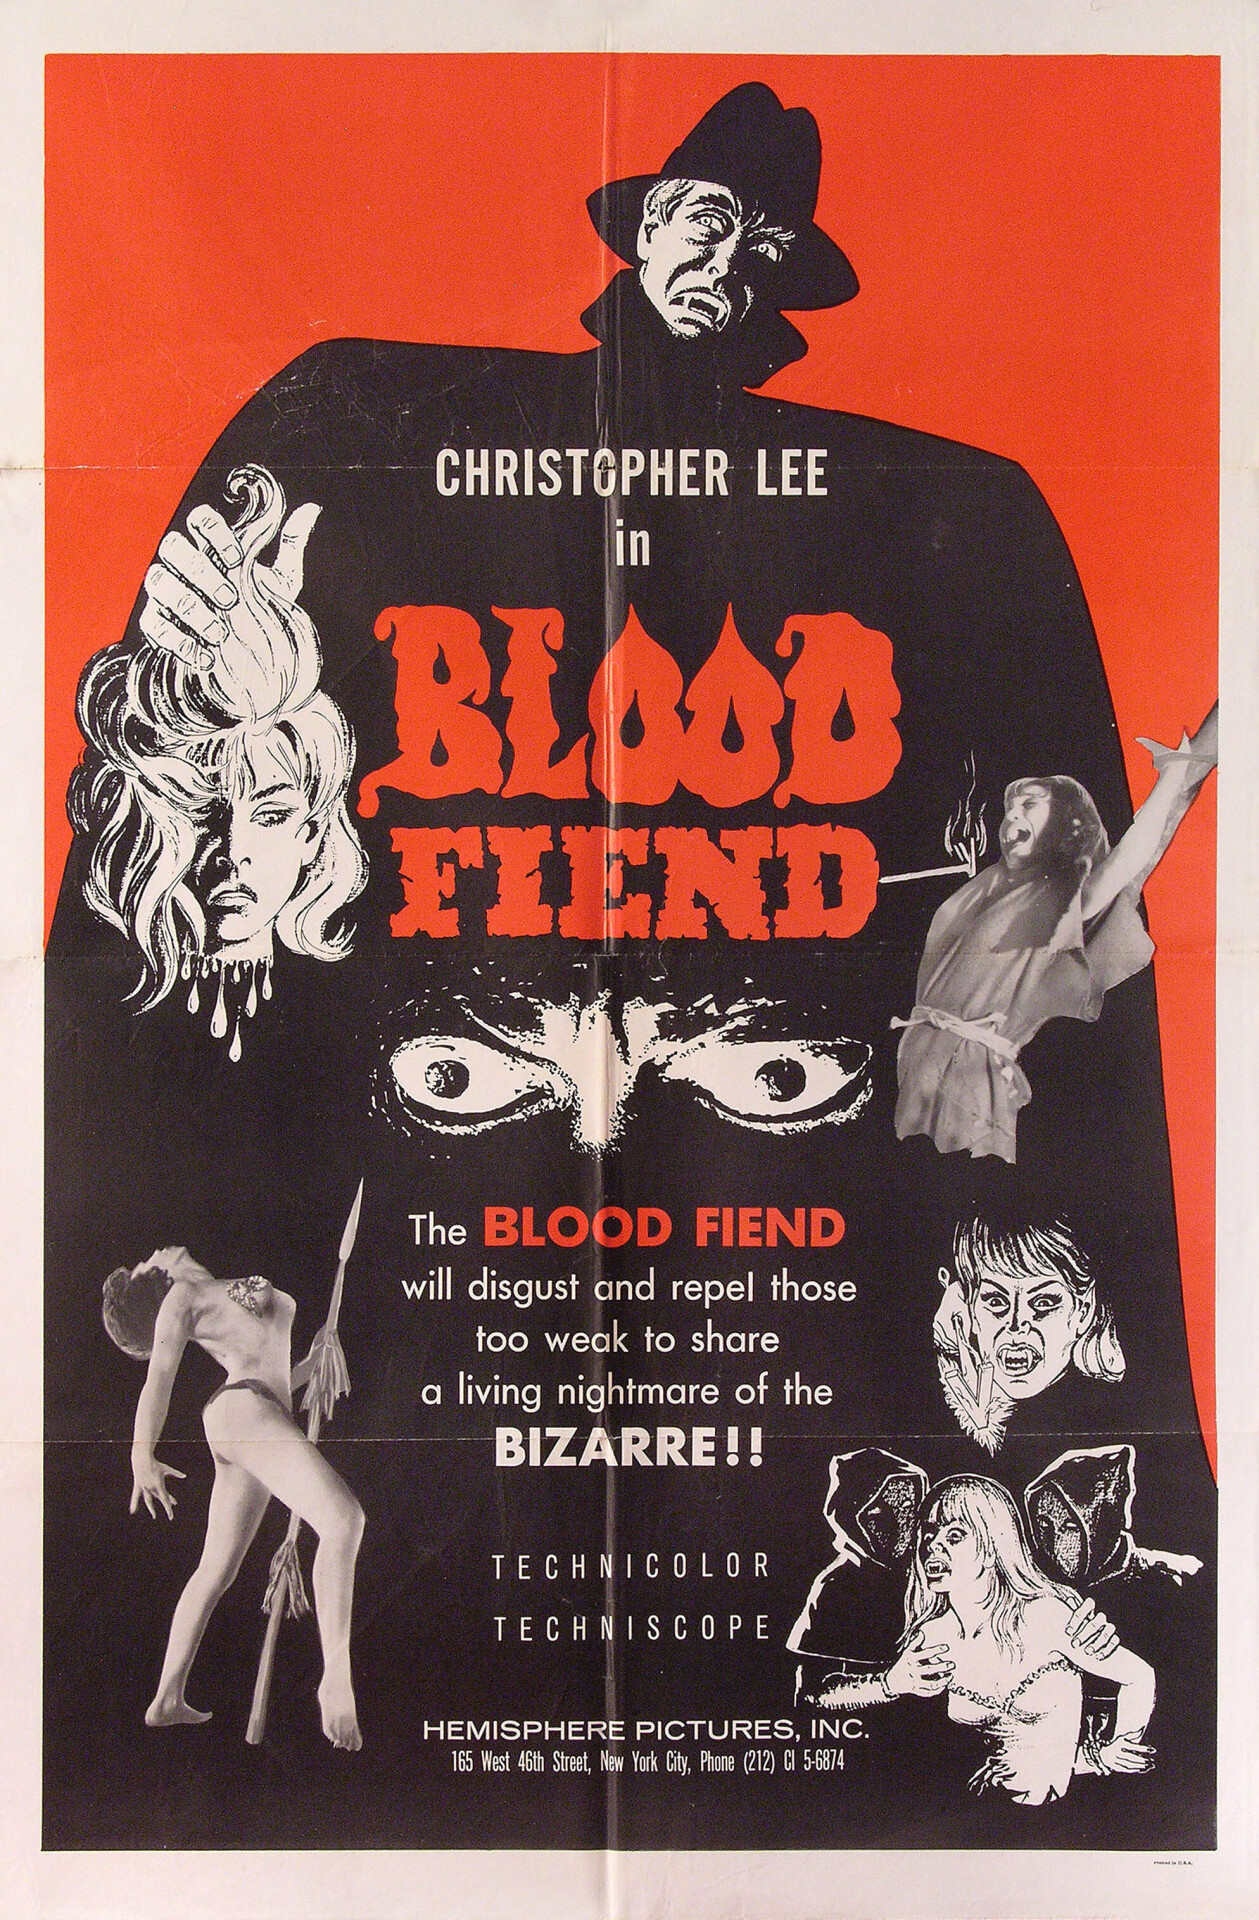 Театр смерти (Blood Fiend, 1967), режиссёр Сэмюэл Галлу, американский постер к фильму (ужасы, 1968 год)